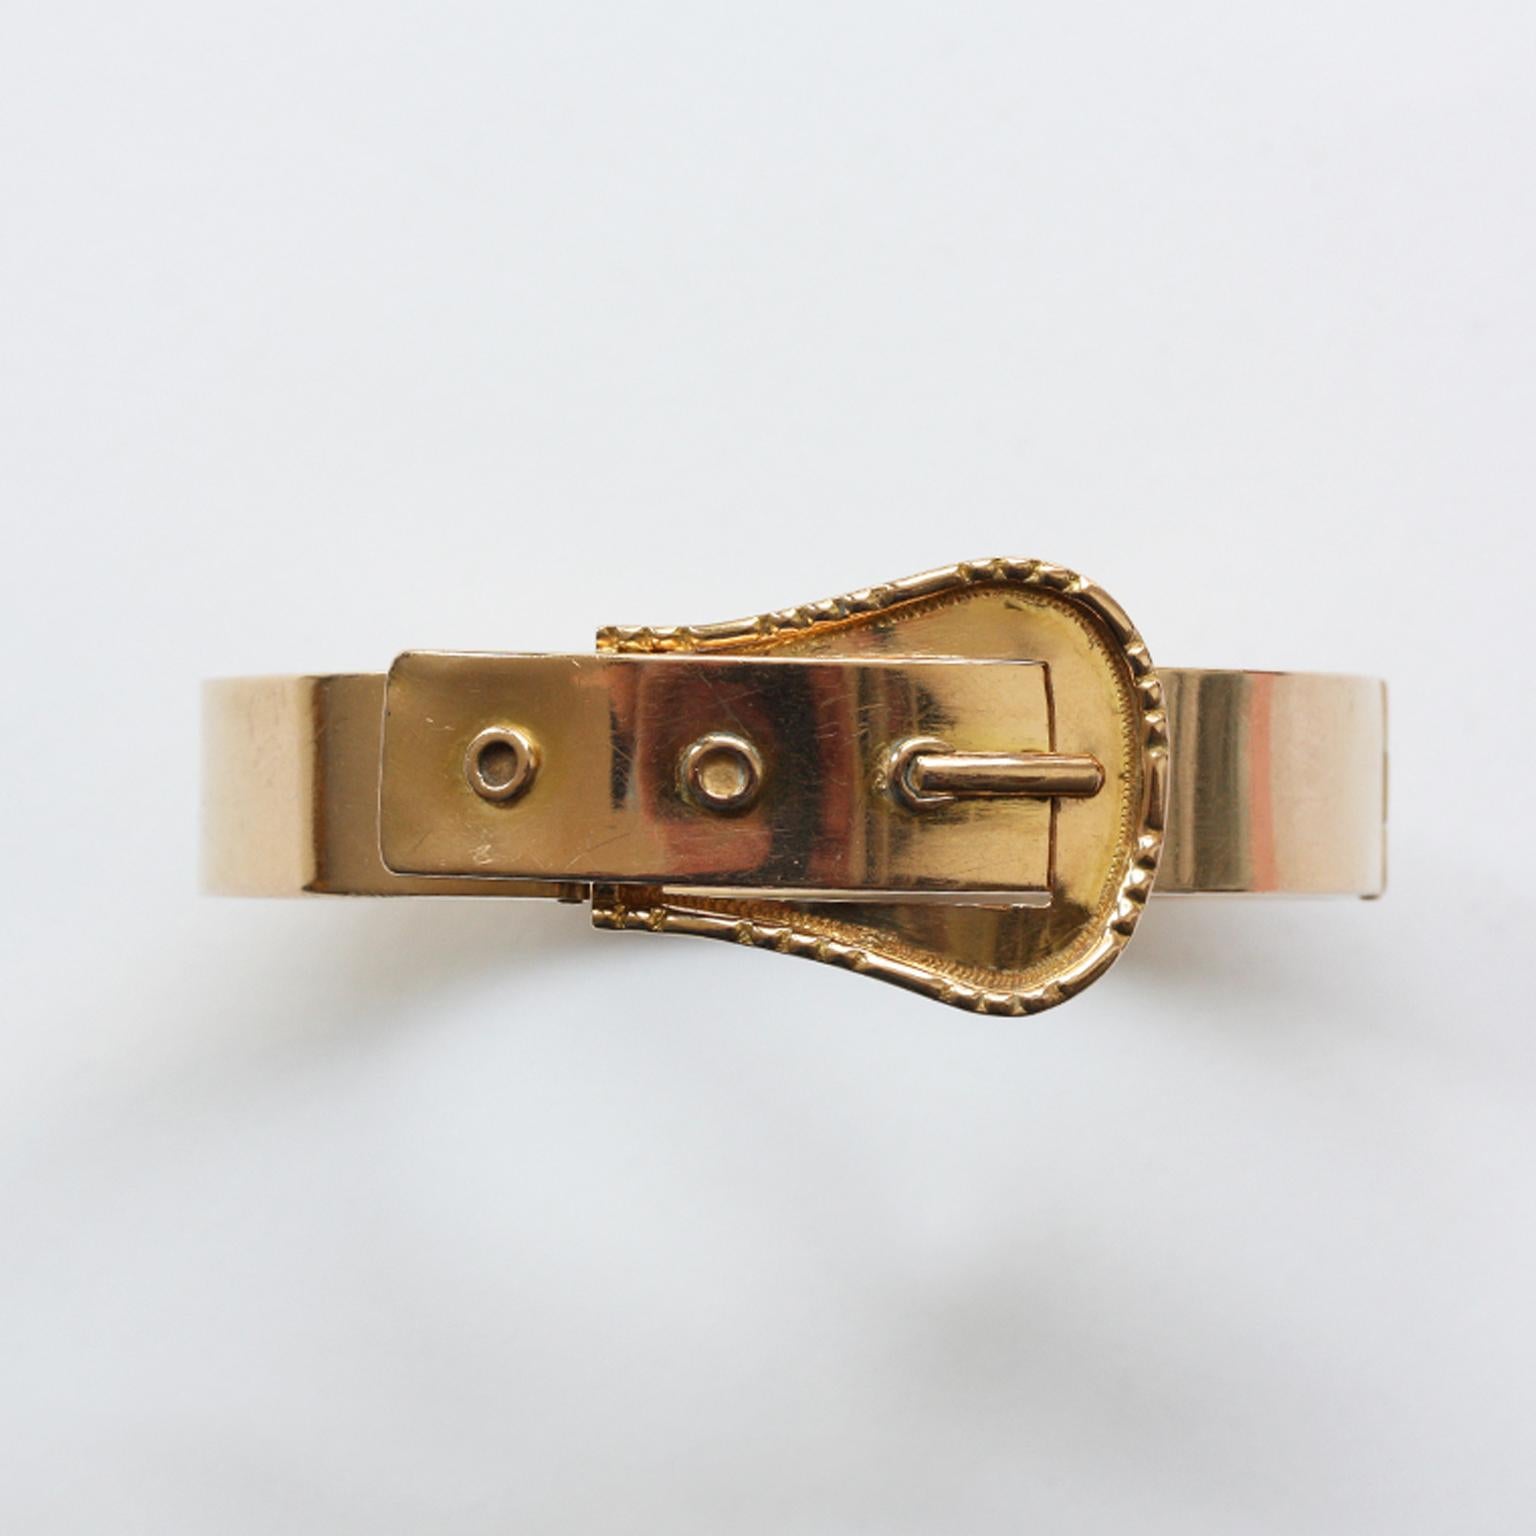 Armband mit Schnalle aus 18 Karat Gold, Frankreich, 19. Jahrhundert.

gewicht: 23,85 Gramm
innenmaß: 6 x 5 cm
umfang: 18 - 18,5 cm. Passt für ein Handgelenk von 17 - 18 cm